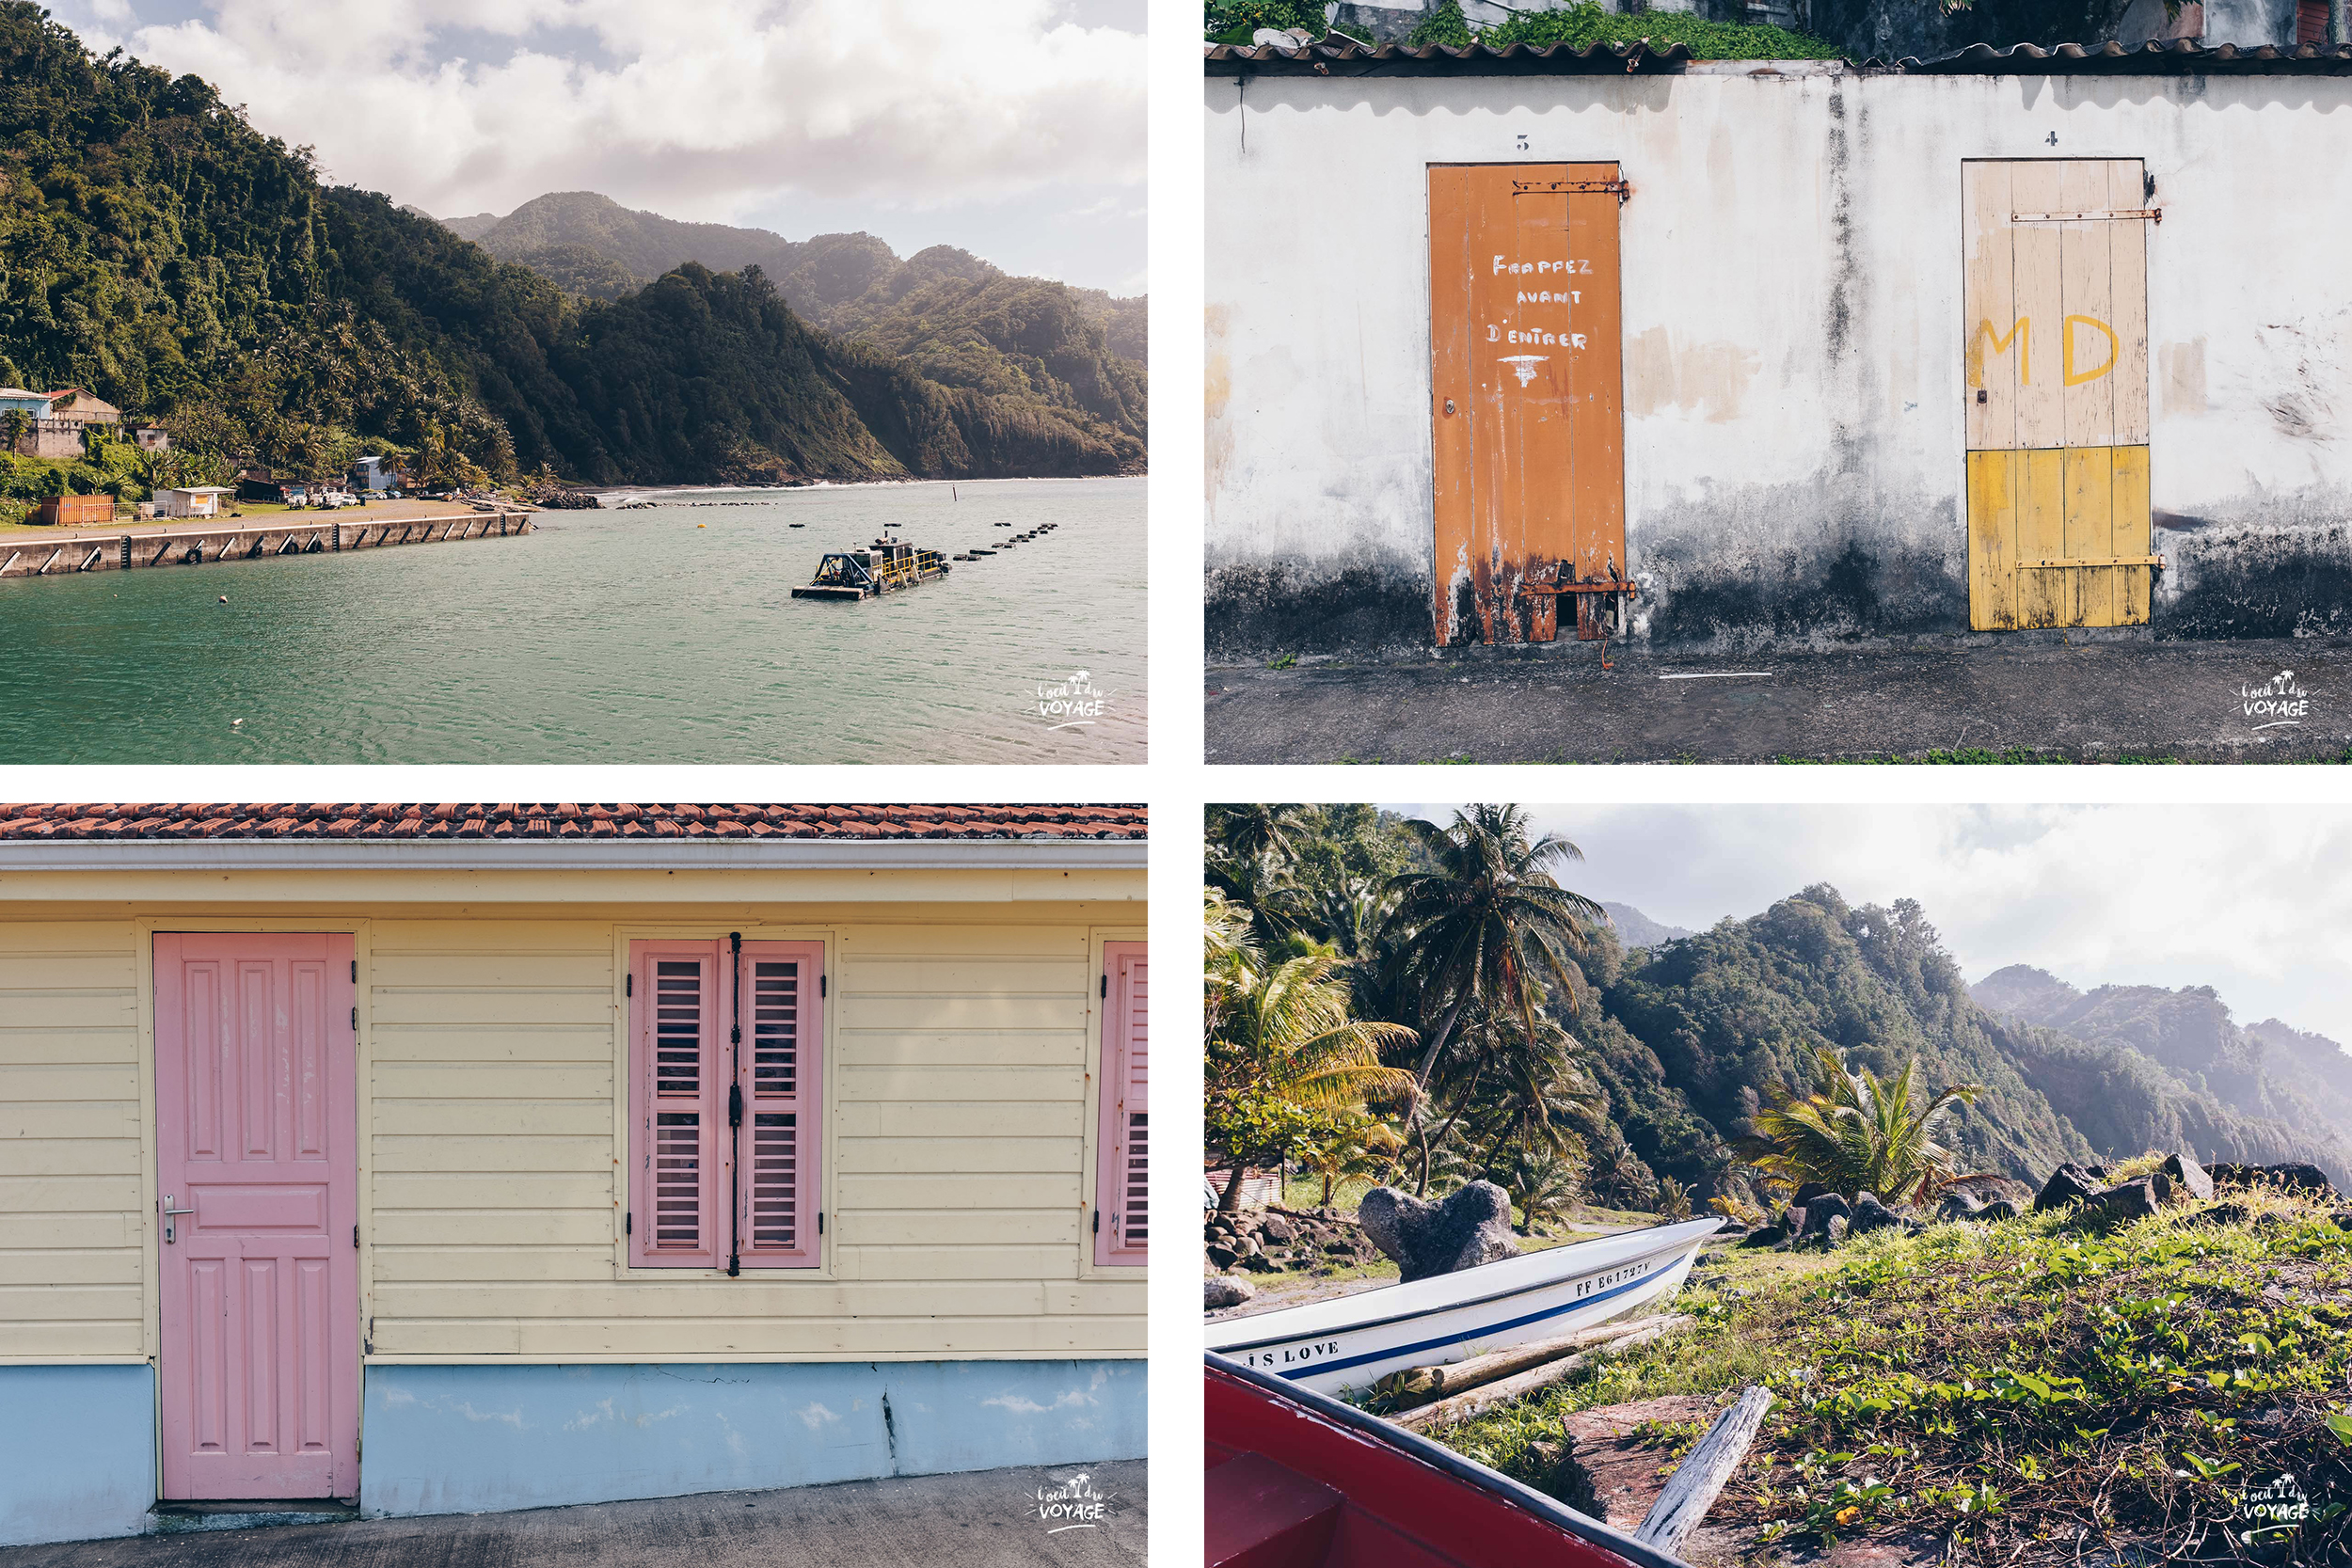 visiter Grand-Rivière en Martinique, voyage aux Antilles, bon plan vacances martinique, meilleur blog voyage